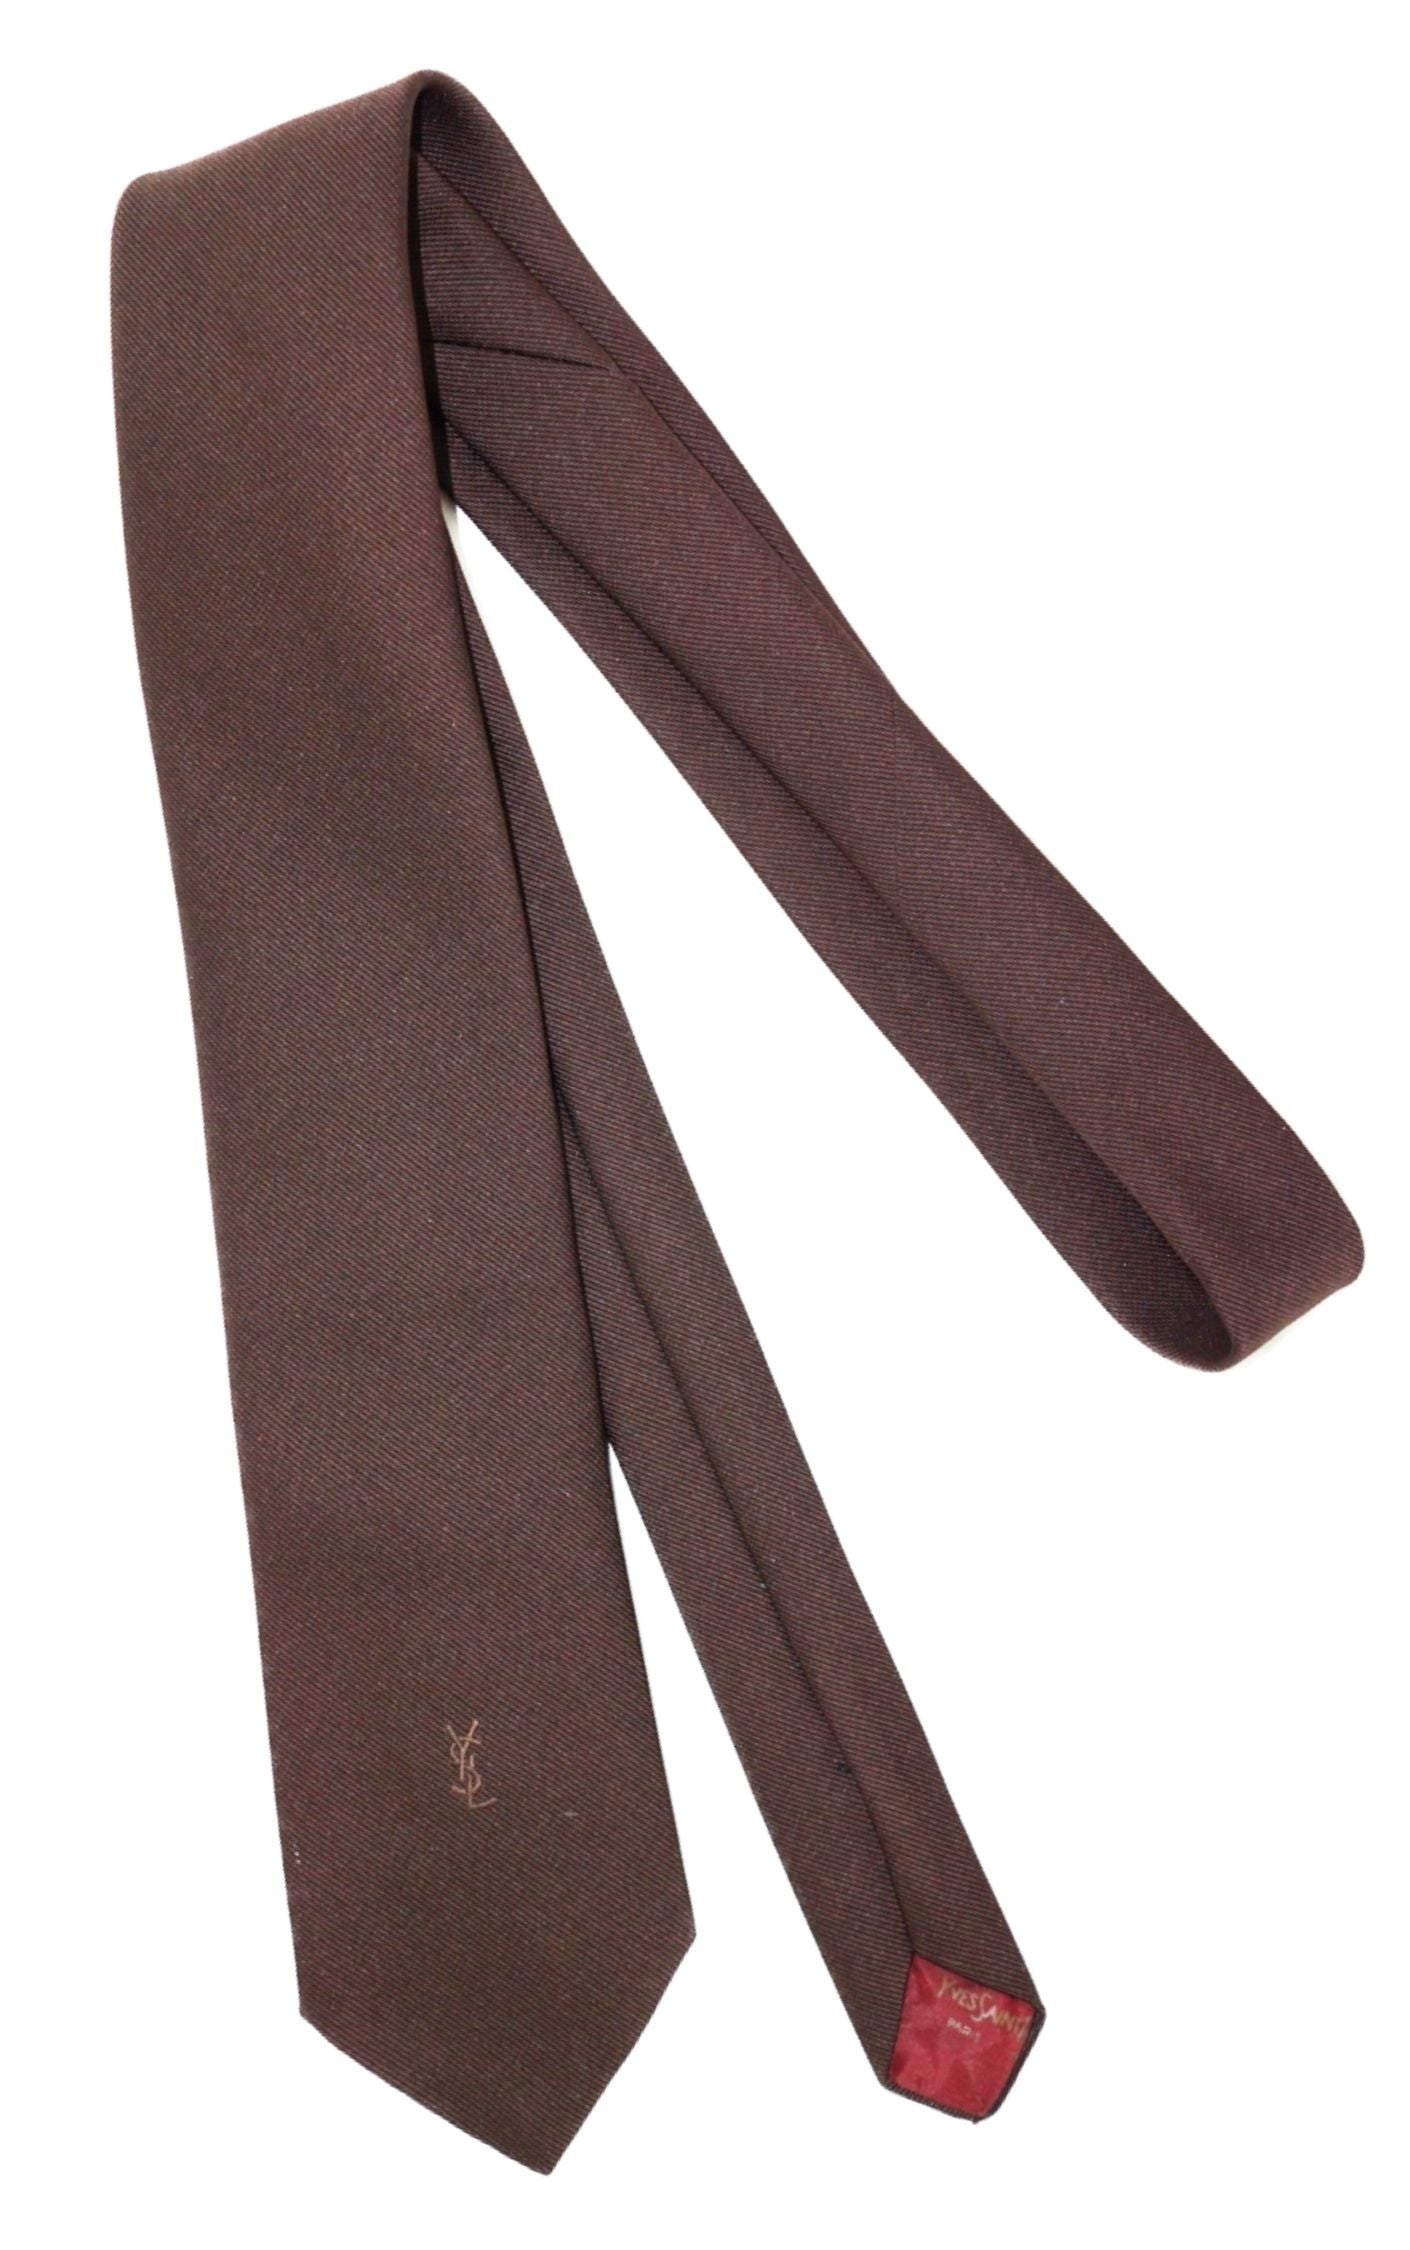 Yves Saint Laurent YSL Vintage Brown Slim Tie RESELLUM